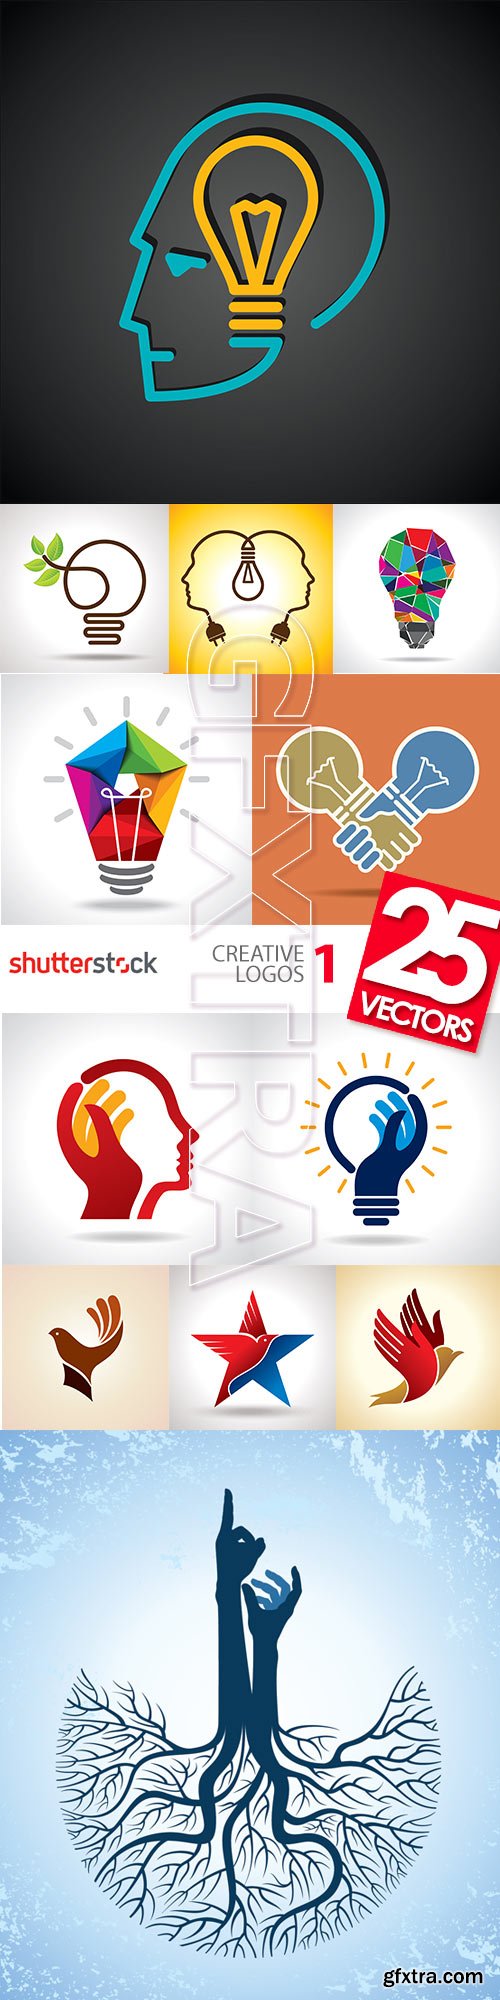 Creative Logos I, 25xEPS